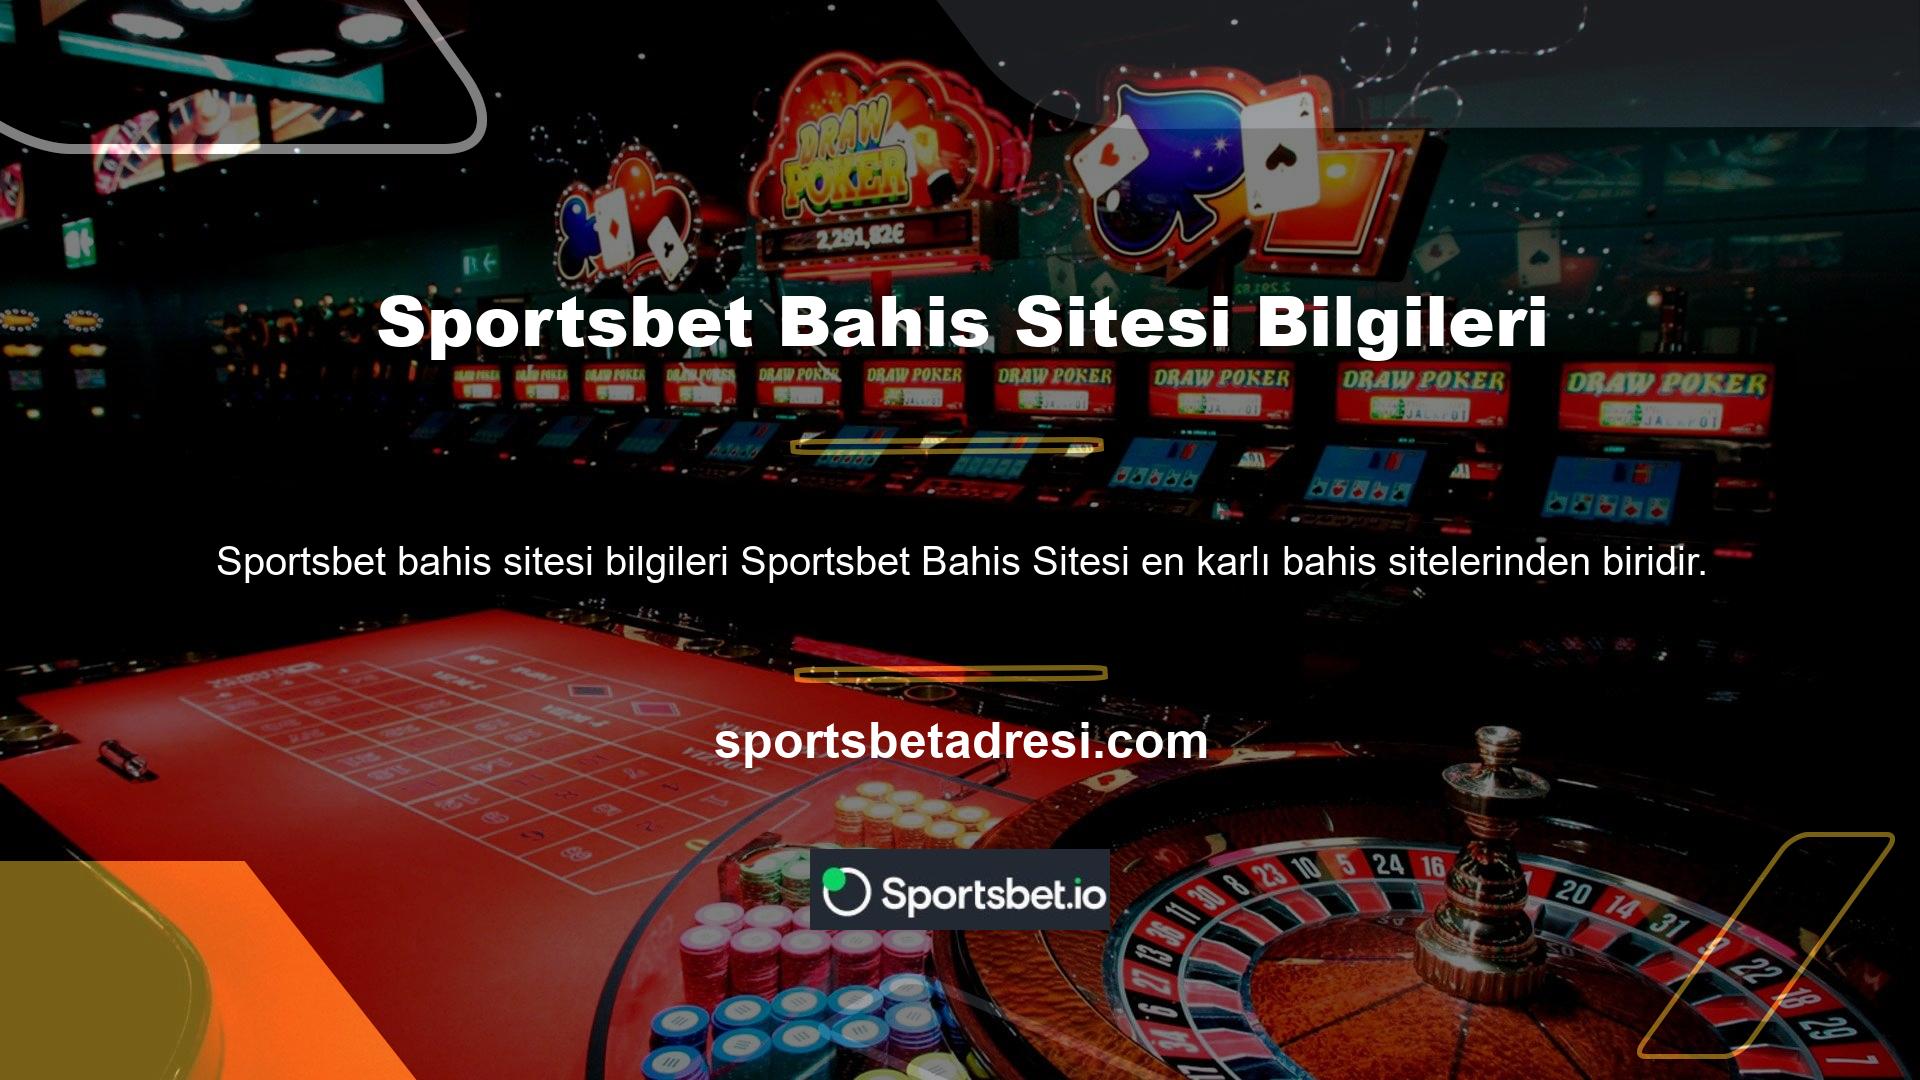 Bu ödüllü siteye üye olmak için Sportsbet Gaming e-postanızı oluşturduktan sonra "Sportsbet Bahis Sitesi Bilgileri, Katılın" ifadesini arayın ve gerekli formu doldurun